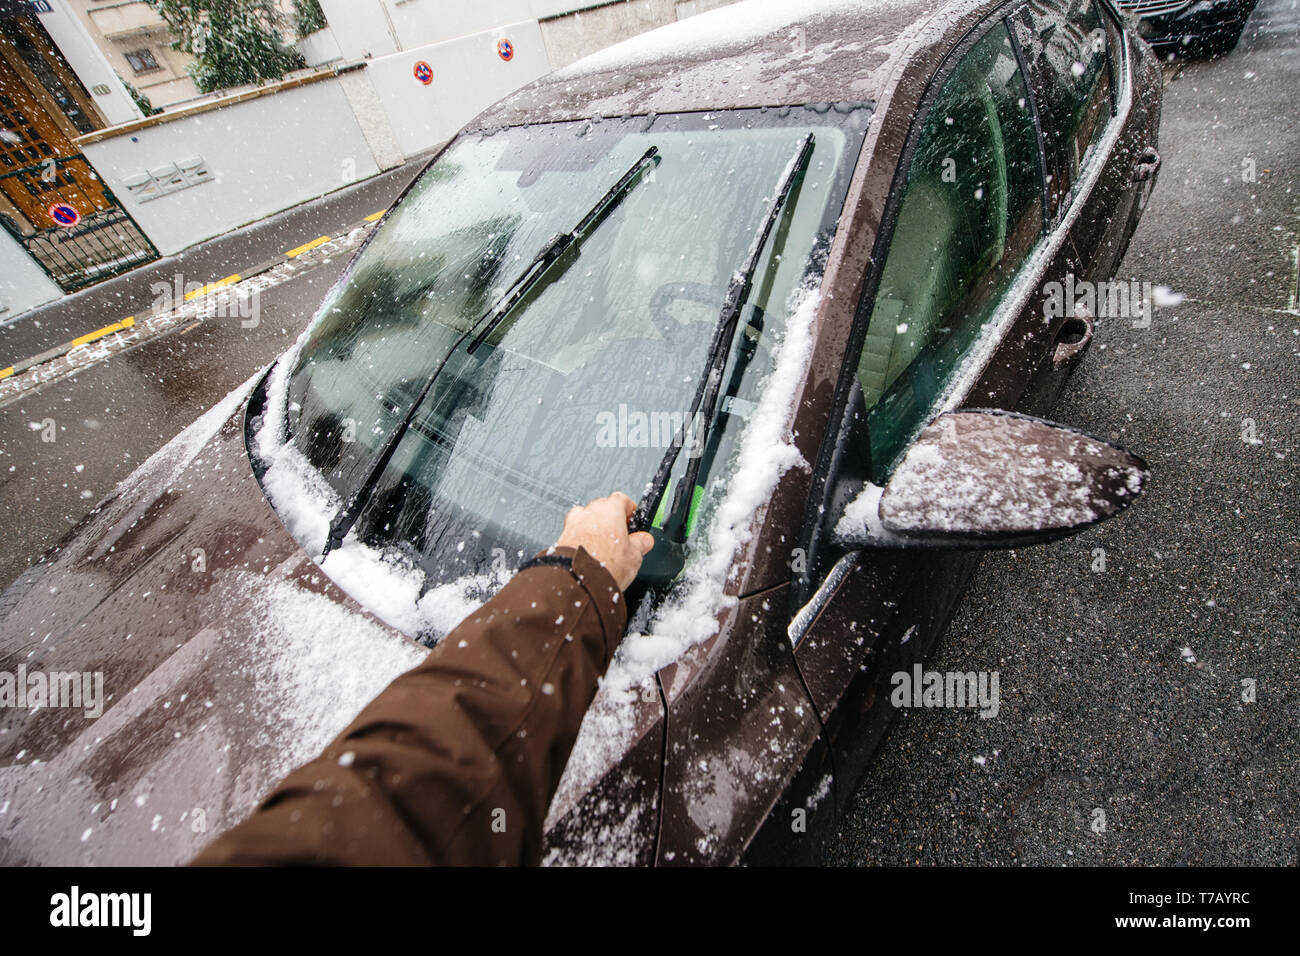 POV persönliche Perspektive des Menschen Reinigung Auto Scheibenwischer aus  dem Schnee an einem kalten Wintertag, bevor neue Fahrt Stockfotografie -  Alamy